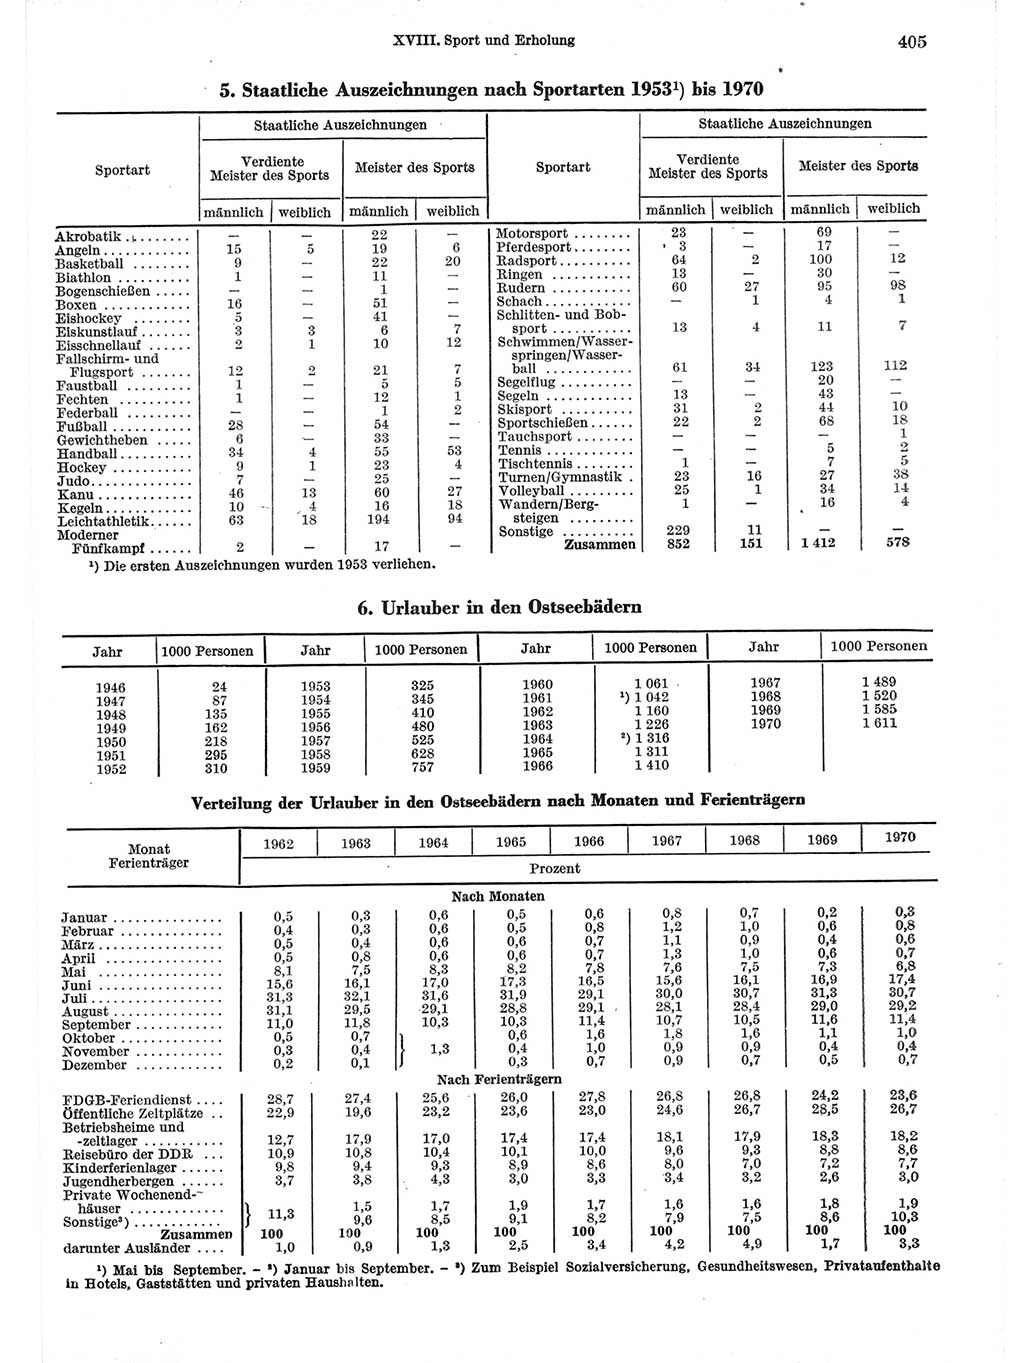 Statistisches Jahrbuch der Deutschen Demokratischen Republik (DDR) 1971, Seite 405 (Stat. Jb. DDR 1971, S. 405)